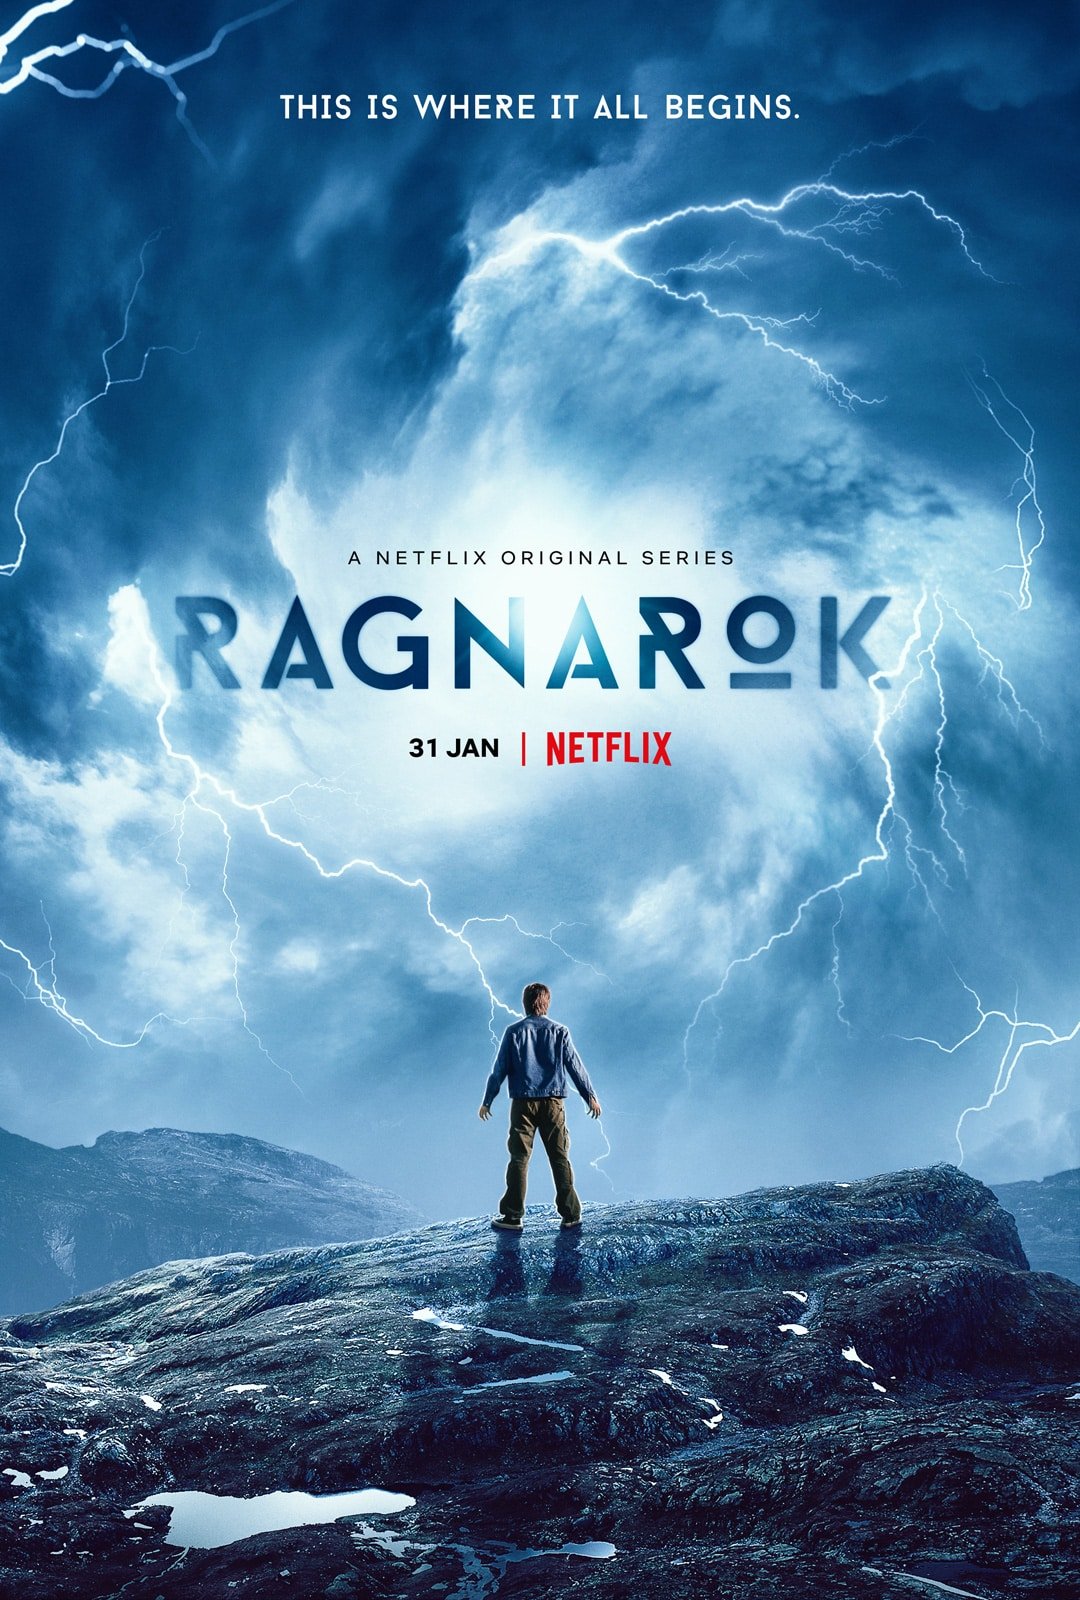 Is Ragnarok Worth to Watch?